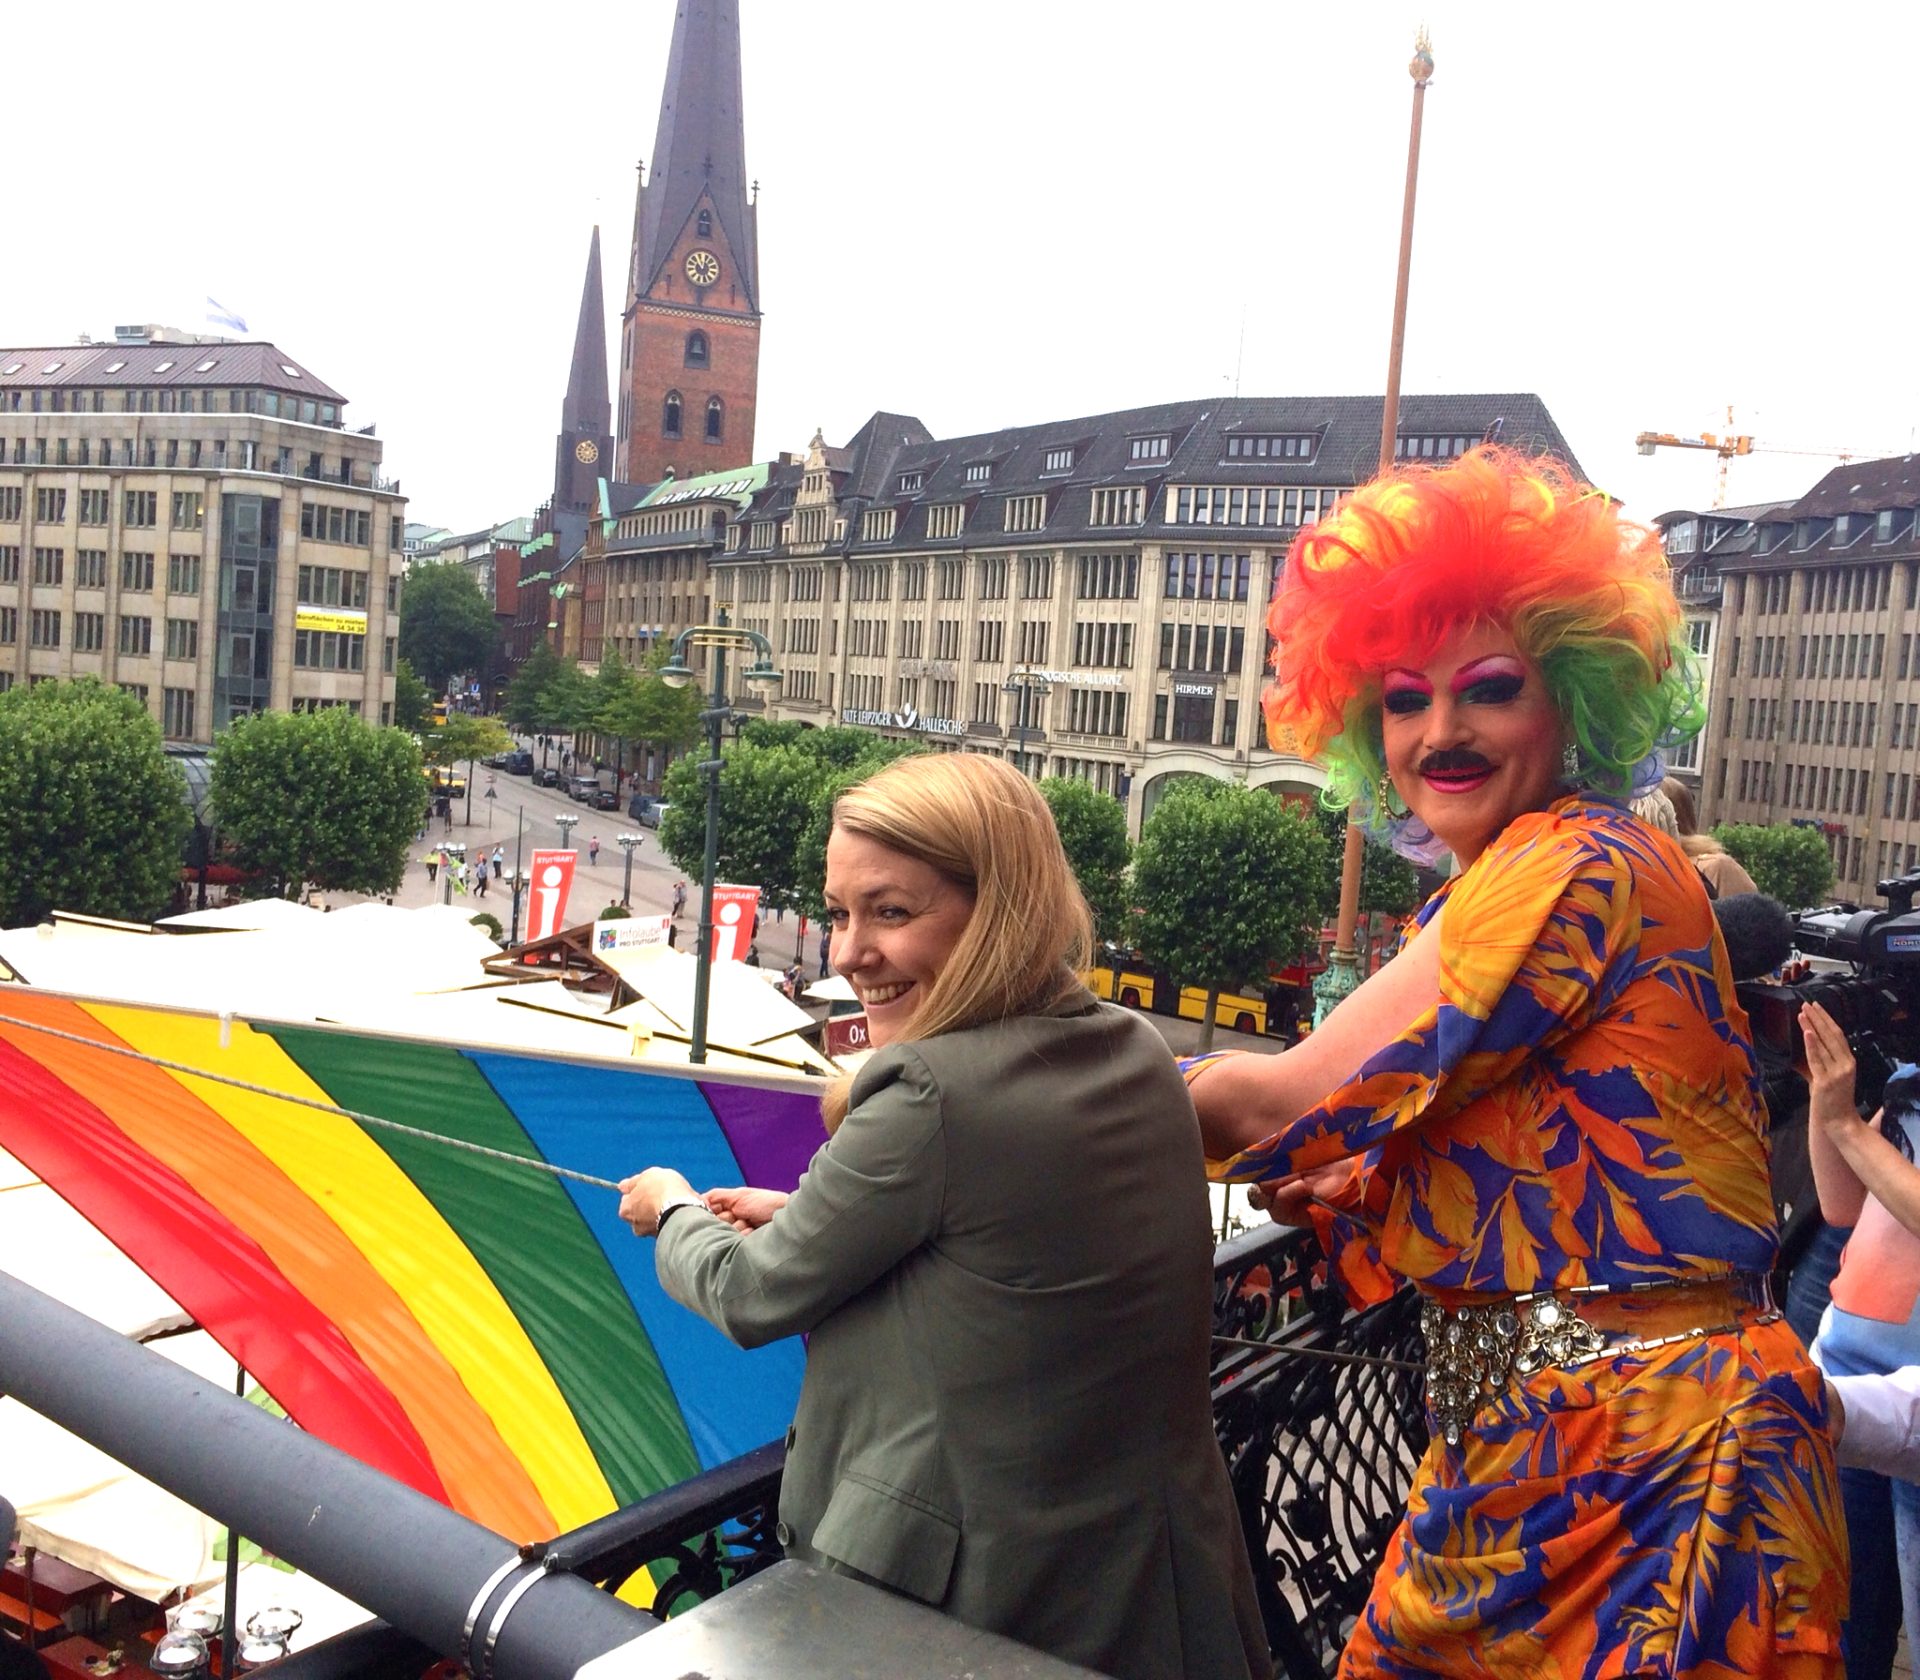 Referenz an Conchita Wurst – Olivia Jones mit Bart beim CSD-Flagge hissen vor dem Hamburger Rathaus